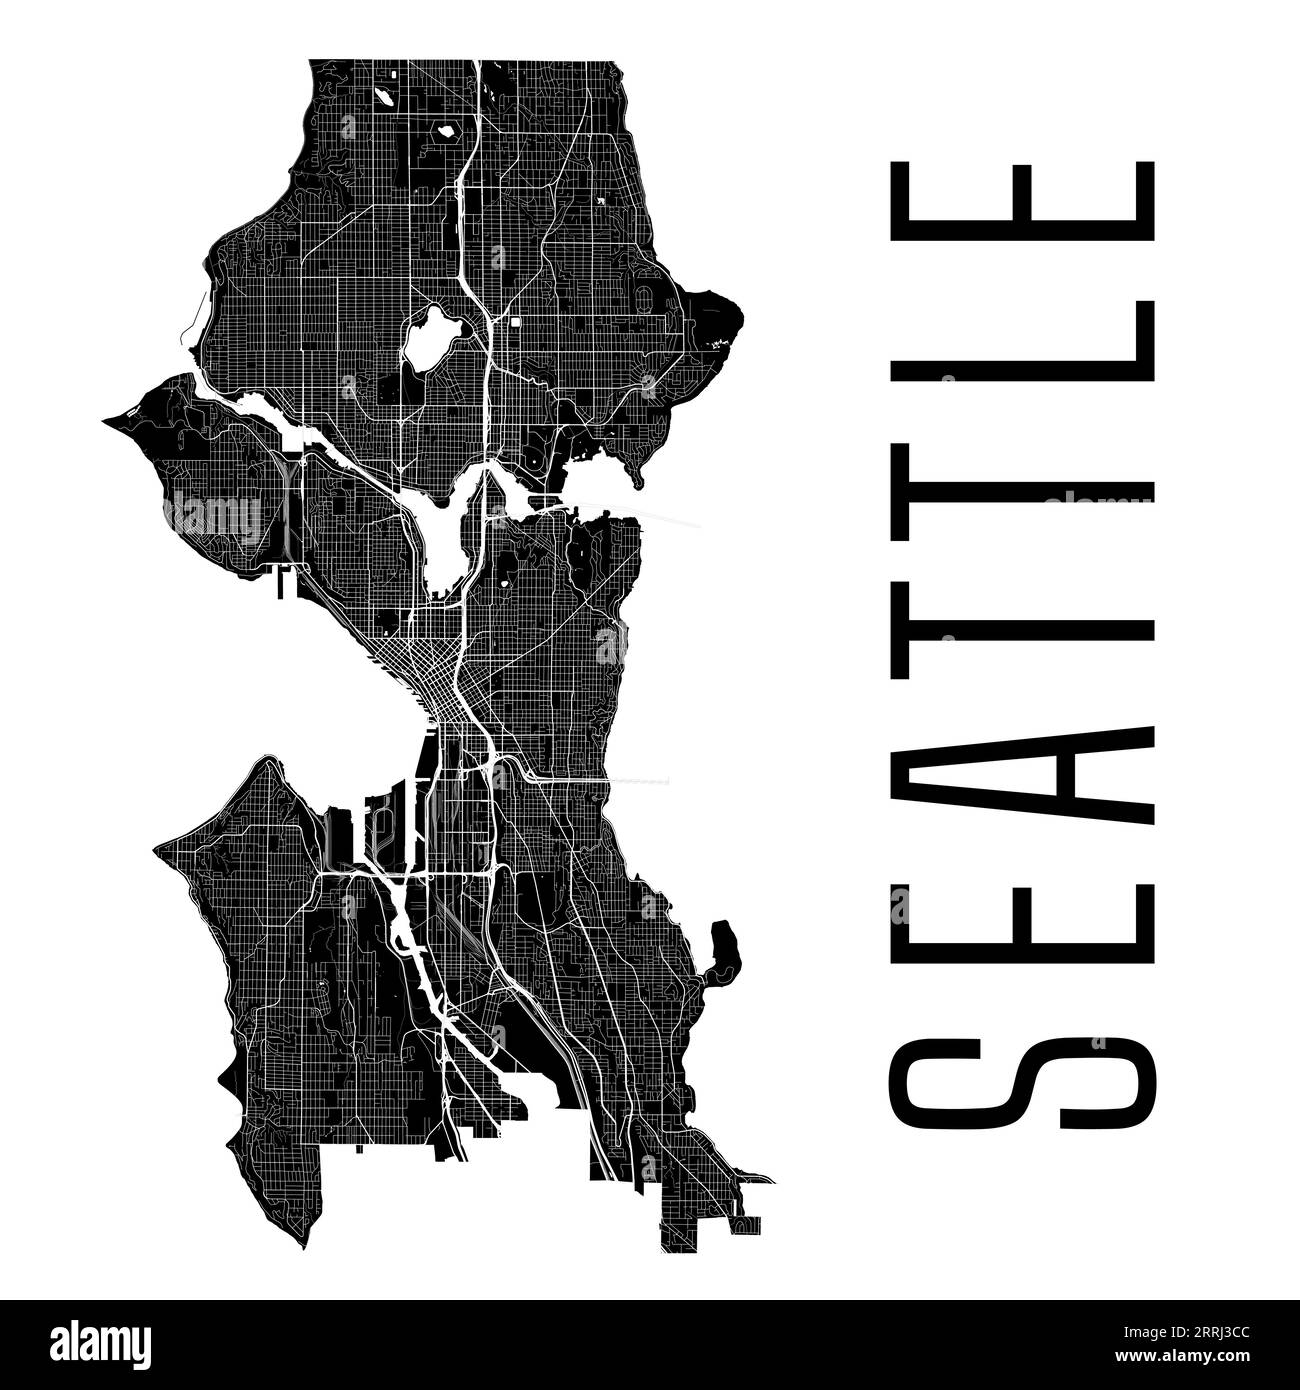 Mappa della città di Seattle, Stati Uniti. Confini amministrativi comunali, mappa dell'area bianca e nera con fiumi e strade, parchi e ferrovie. Illustrazione vettoriale Illustrazione Vettoriale